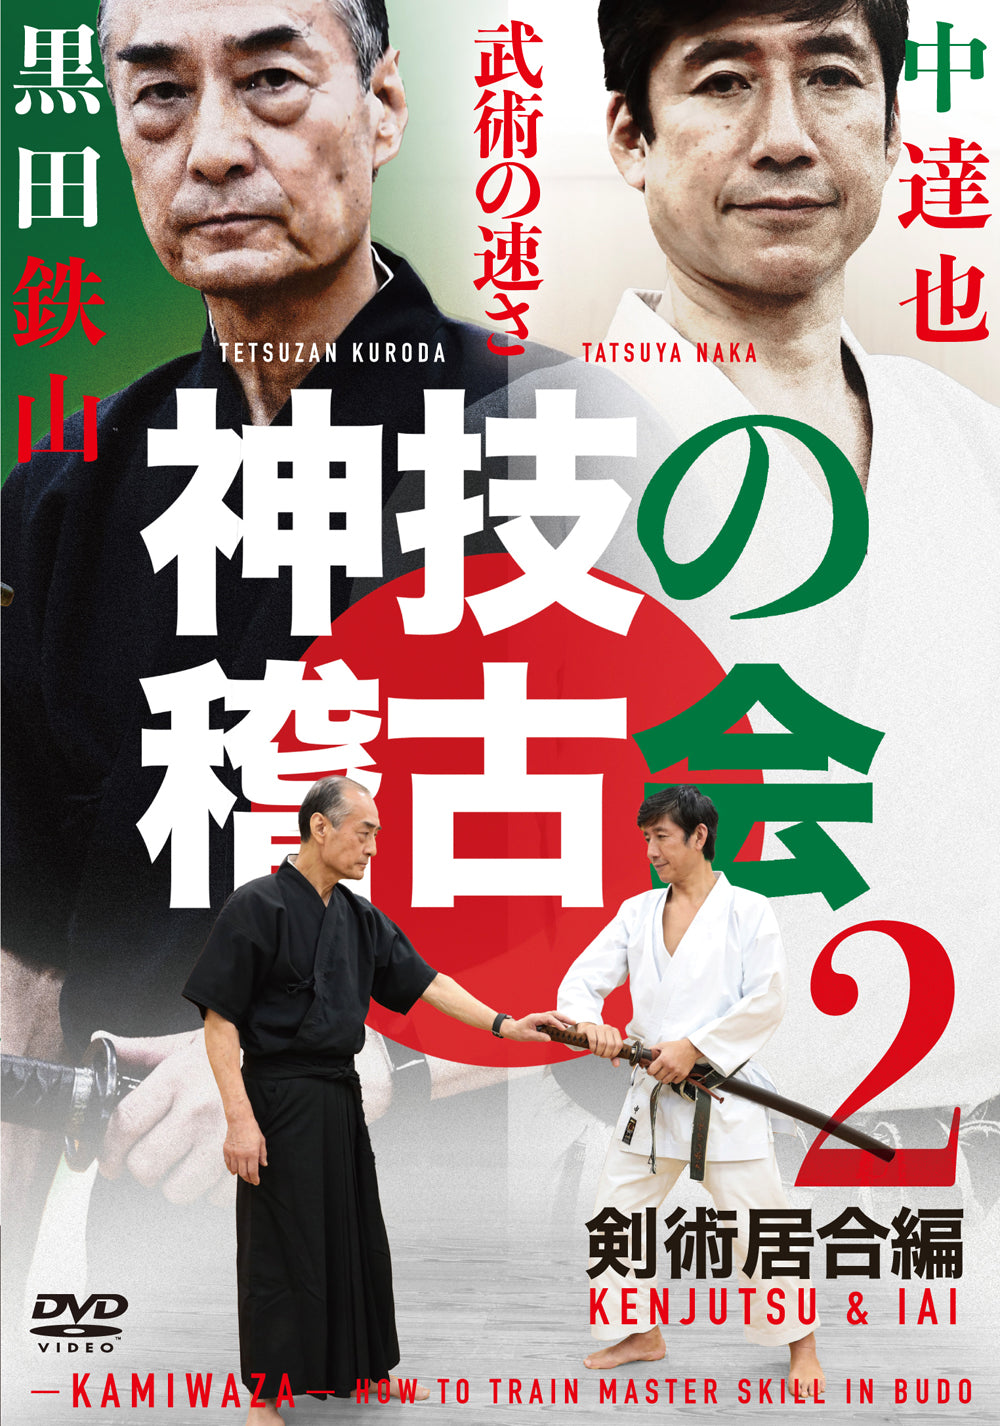 Kamiwaza: How to Train Budo Master Skills DVD 2 Kenjutsu & Iaijutsu by Tetsuzan Kuroda & Tatsuya Naka - Budovideos Inc